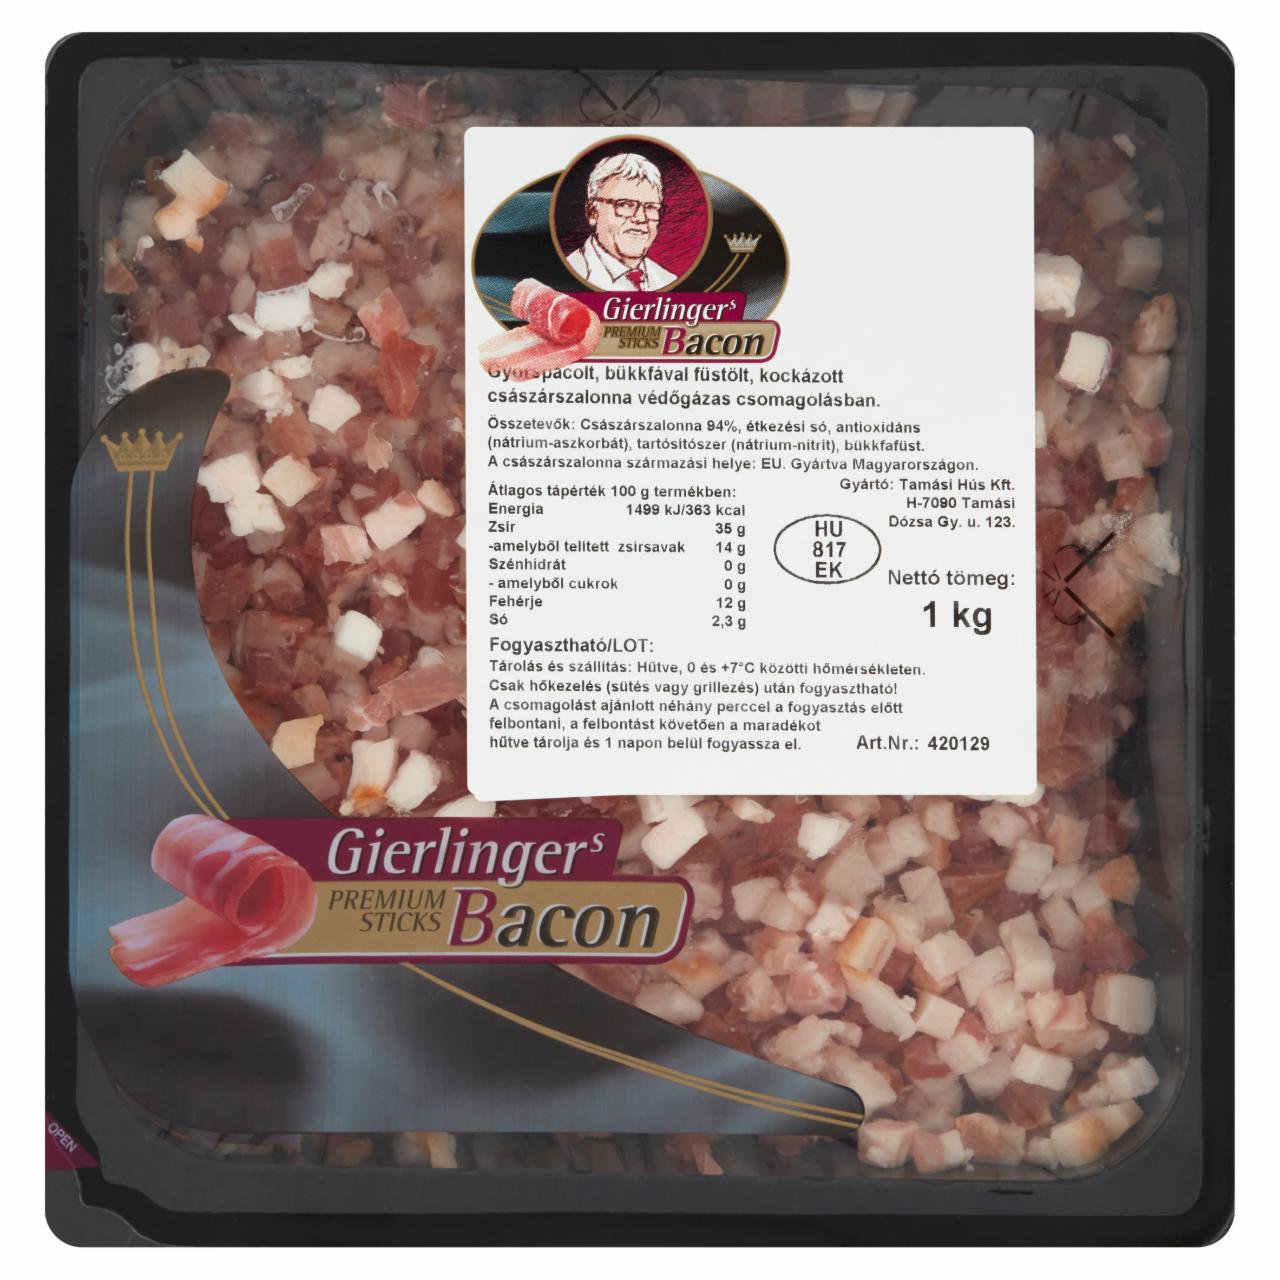 Képek - Gierlinger's bacon kocka 1 kg